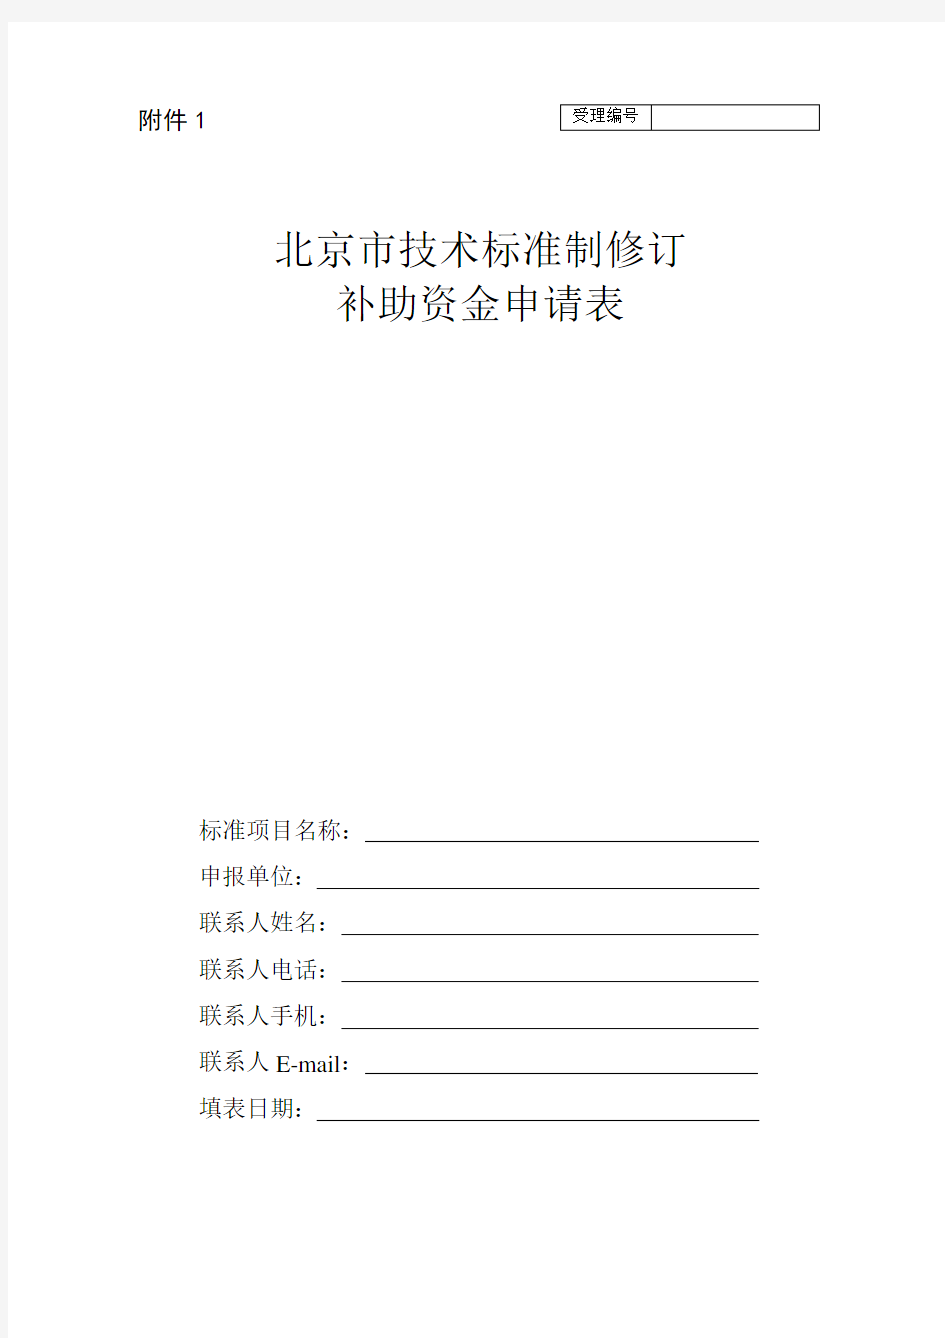 北京市技术标准制修订补助资金申请表